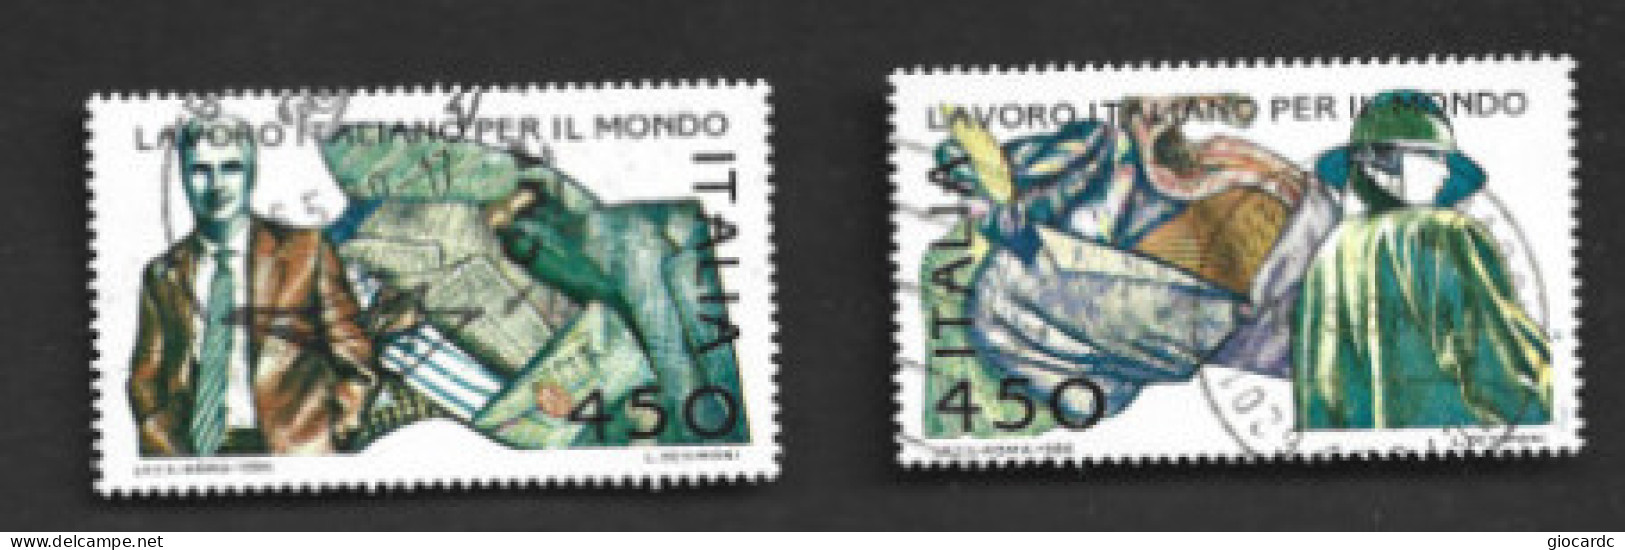 ITALIA REPUBBLICA  - SA 1776.1767  - 1986  LAVORO ITALIANO: MODA  (COMPLET SET OF 2)  -  USATO  -  RIF. 30813 - 1981-90: Usati